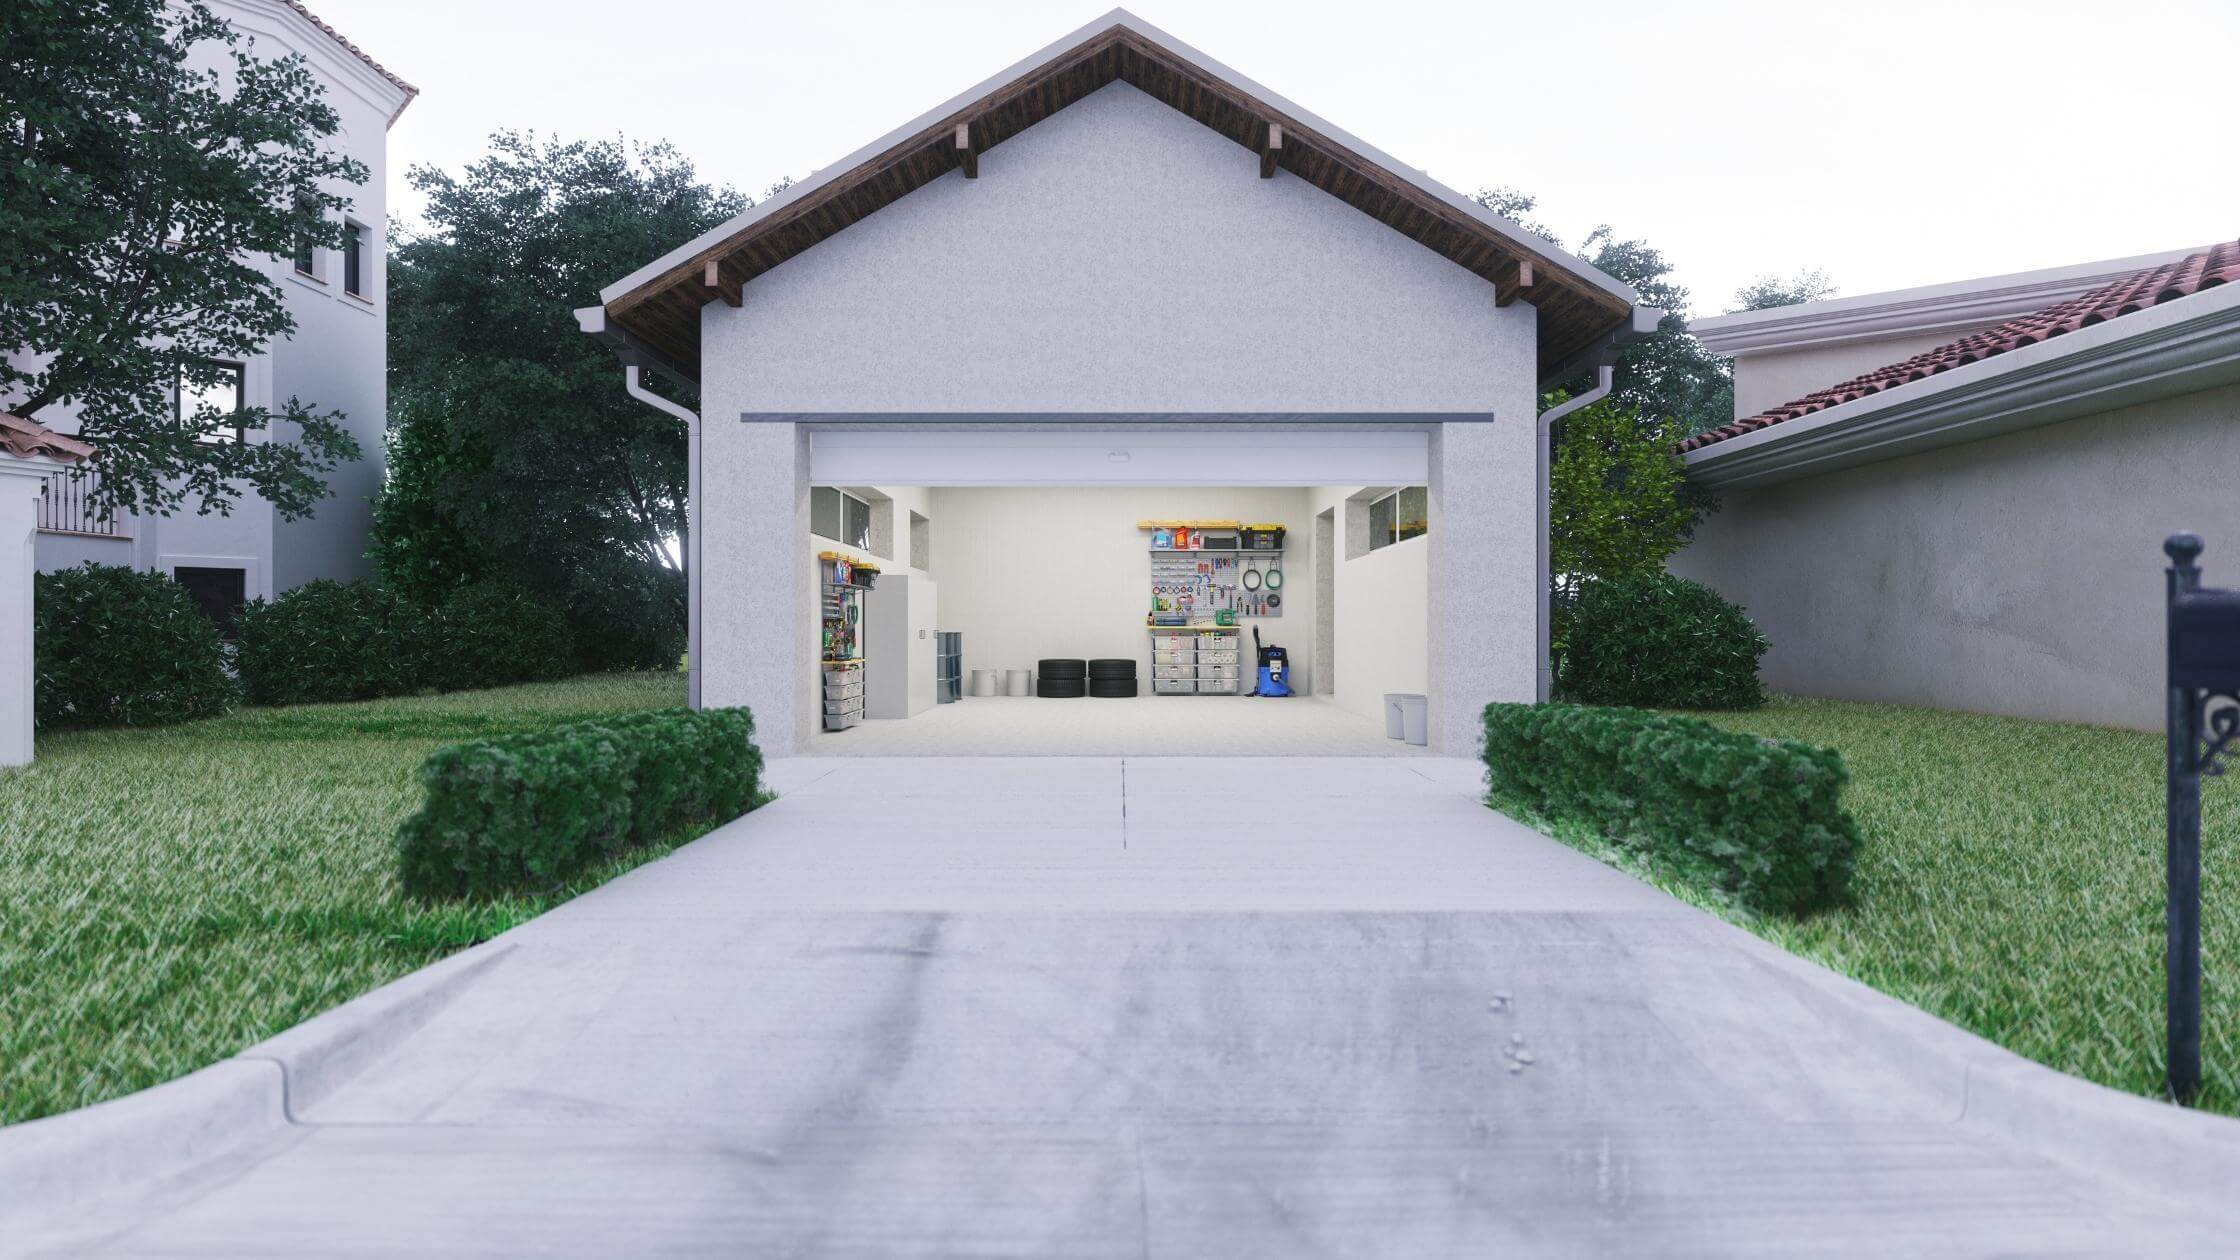 home with open garage door